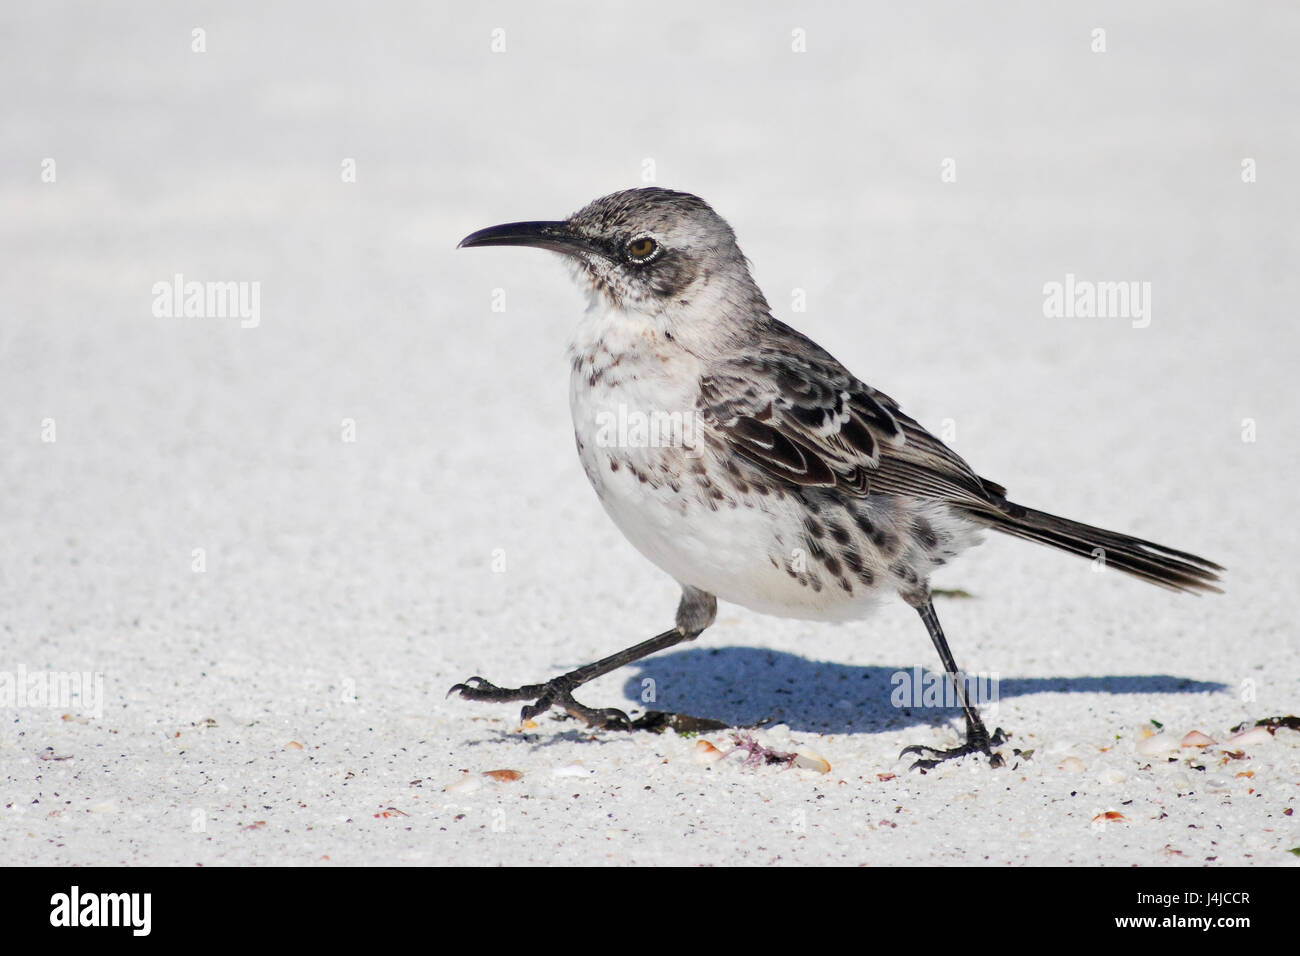 Hood mockingbird (Mimus macdonaldi) sur la plage, Gardner Bay, Espanola, Îles Galápagos Banque D'Images